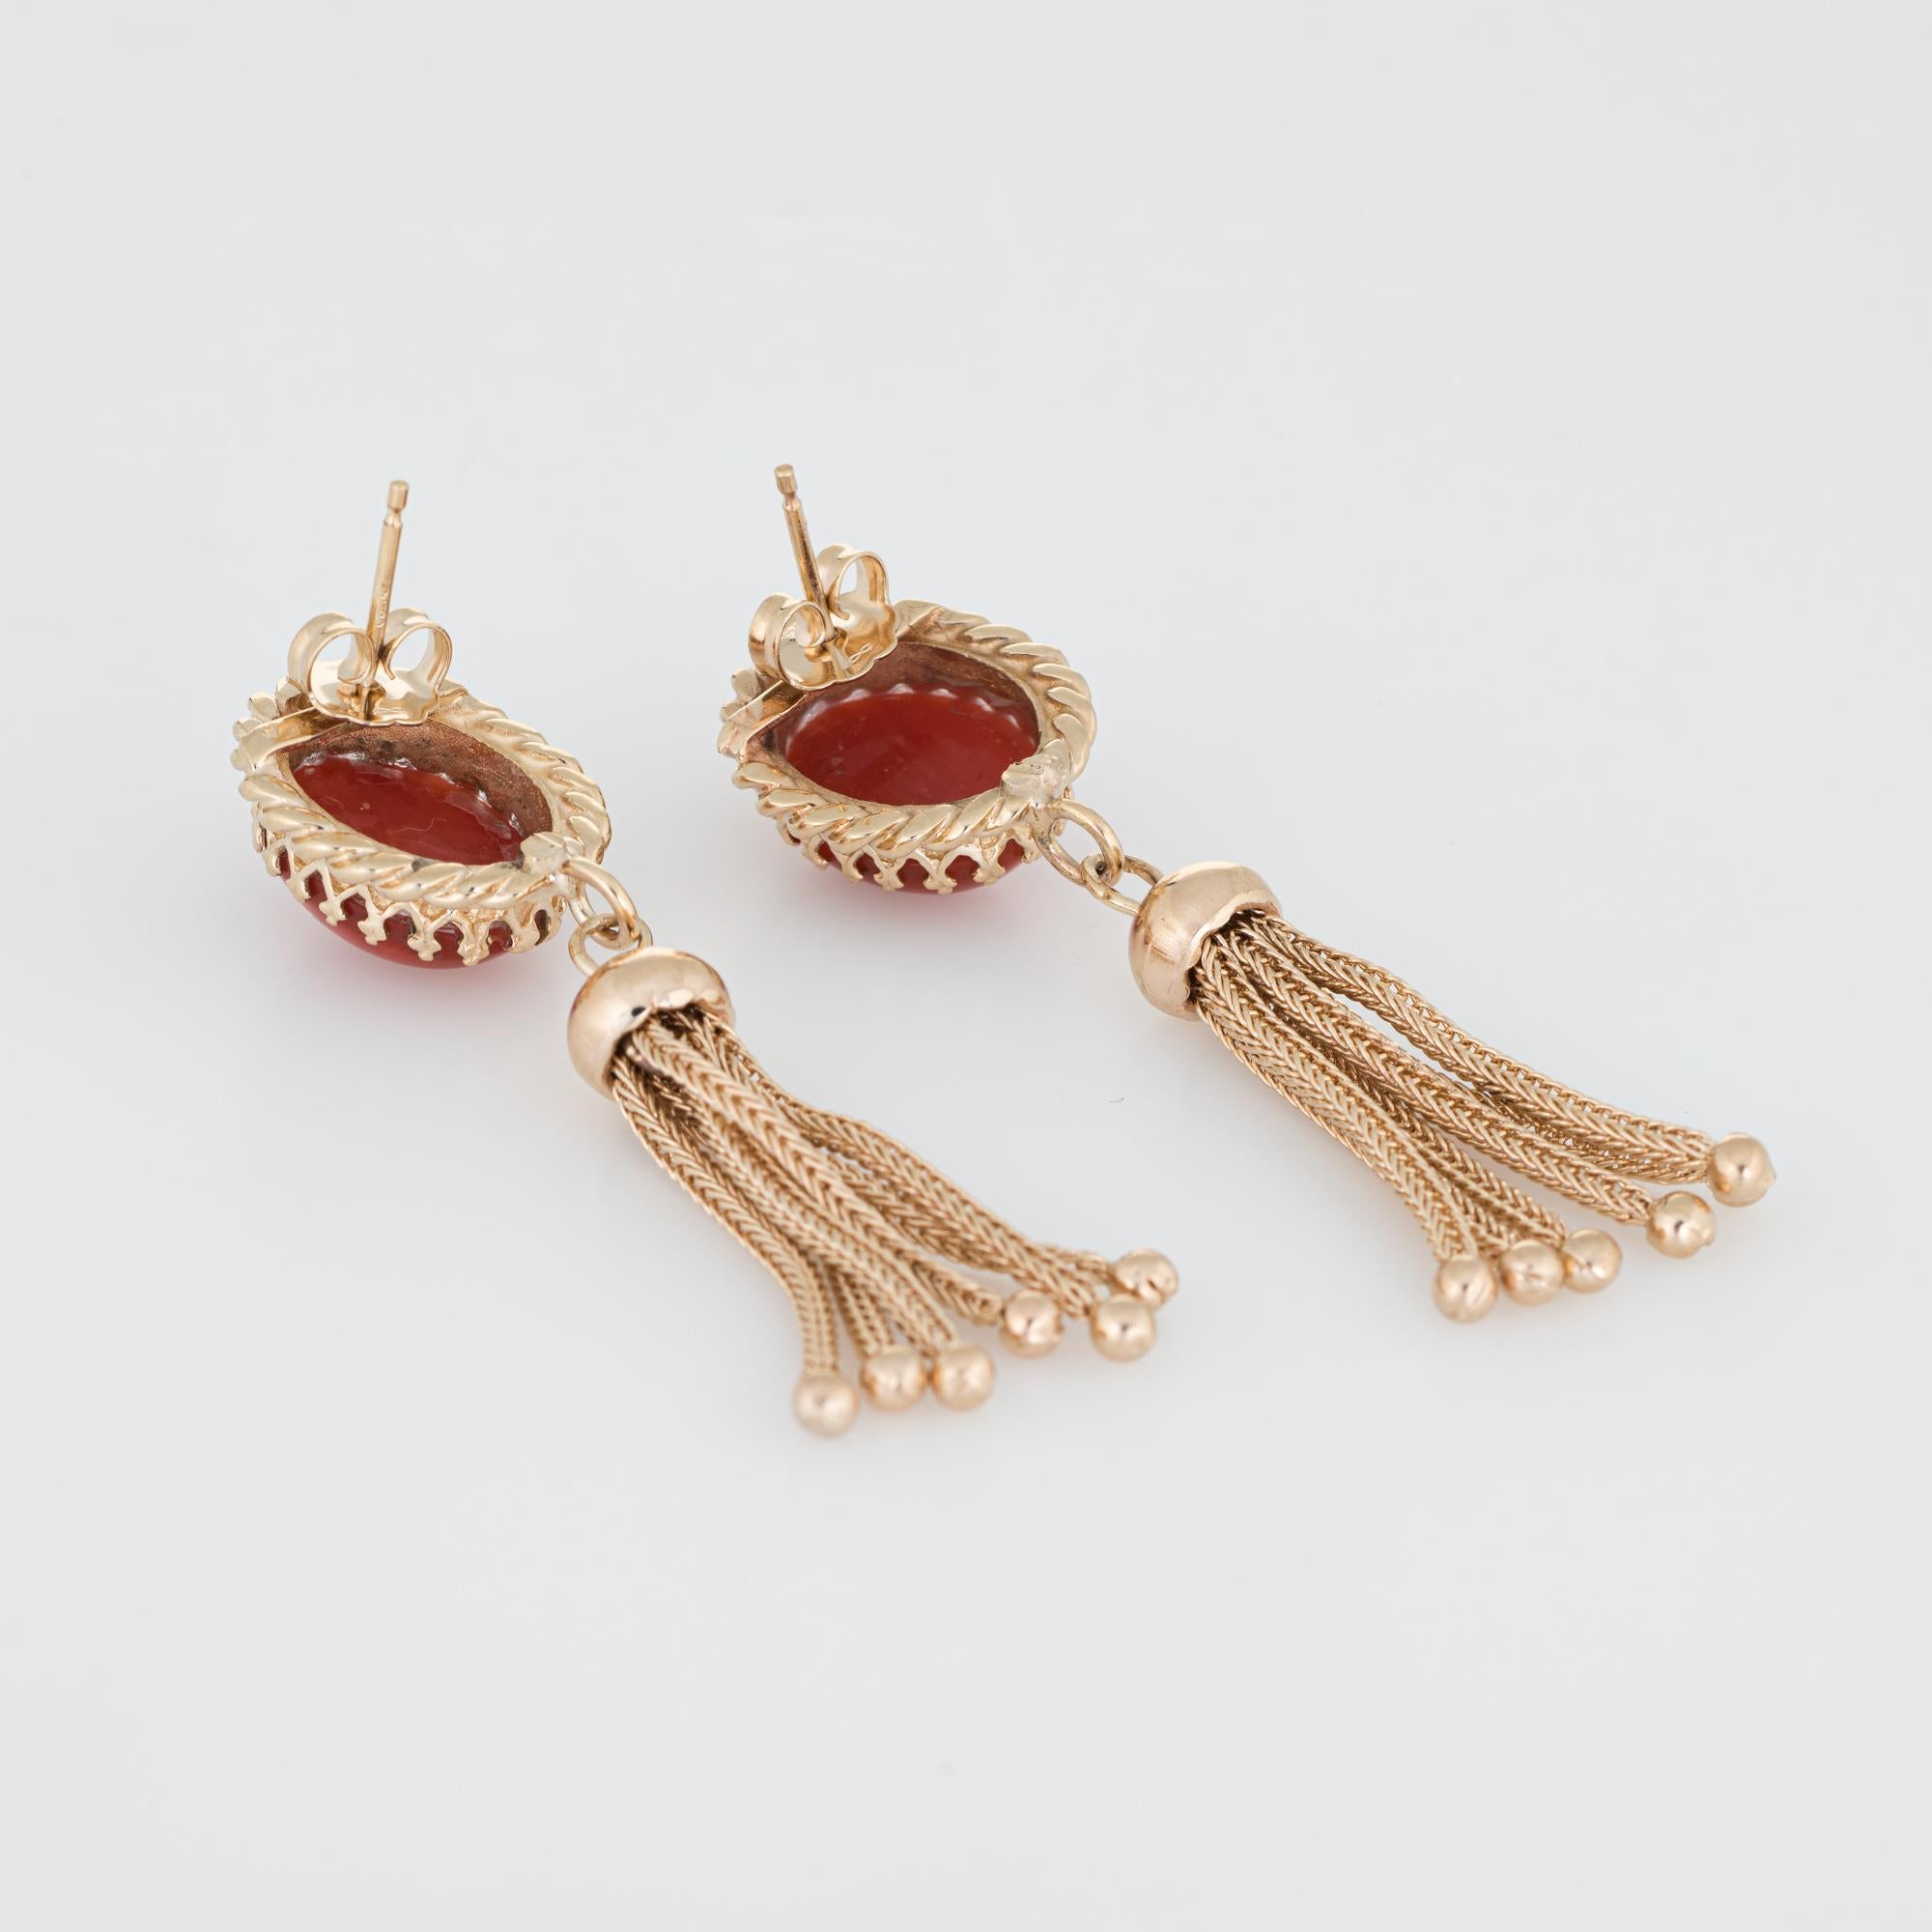 Fein detailliertes Paar Vintage-Ohrringe mit Quasten, gefertigt aus 14 Karat Gelbgold. 

Jede rote Mittelmeerkoralle misst 12 mm x 10 mm (geschätzte 4,50 Karat pro Stück - geschätztes Gesamtgewicht 9 Karat). Die Koralle ist in ausgezeichnetem